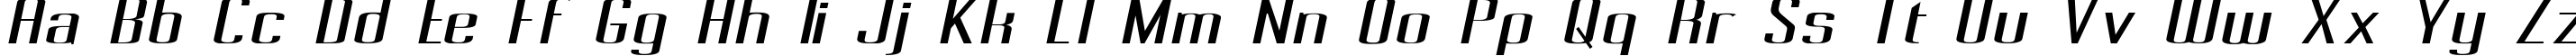 Пример написания английского алфавита шрифтом Pecot Oblique